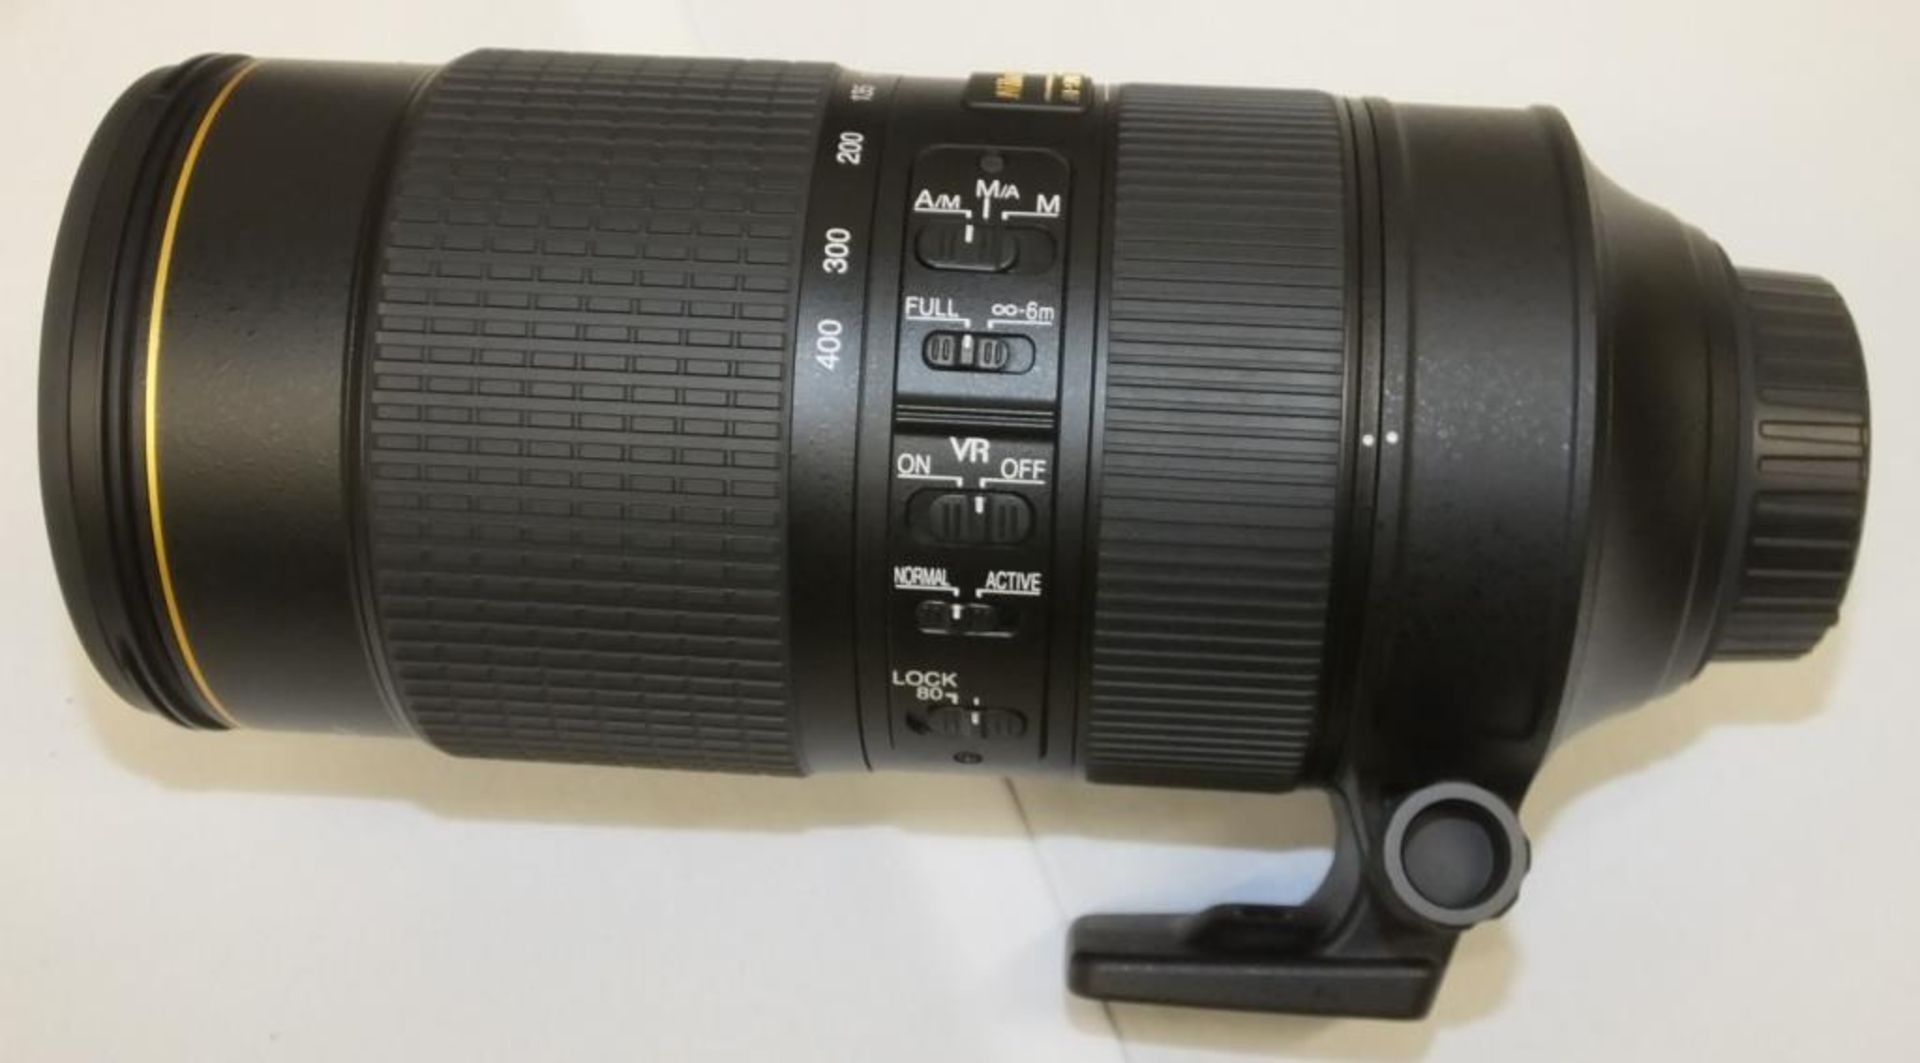 Nikon AF-S Nikkor 80-400mm F/4.5-5.6G ED VR Lens - Serial No. 268935 with Nikon CL-M2 Case - Image 4 of 7